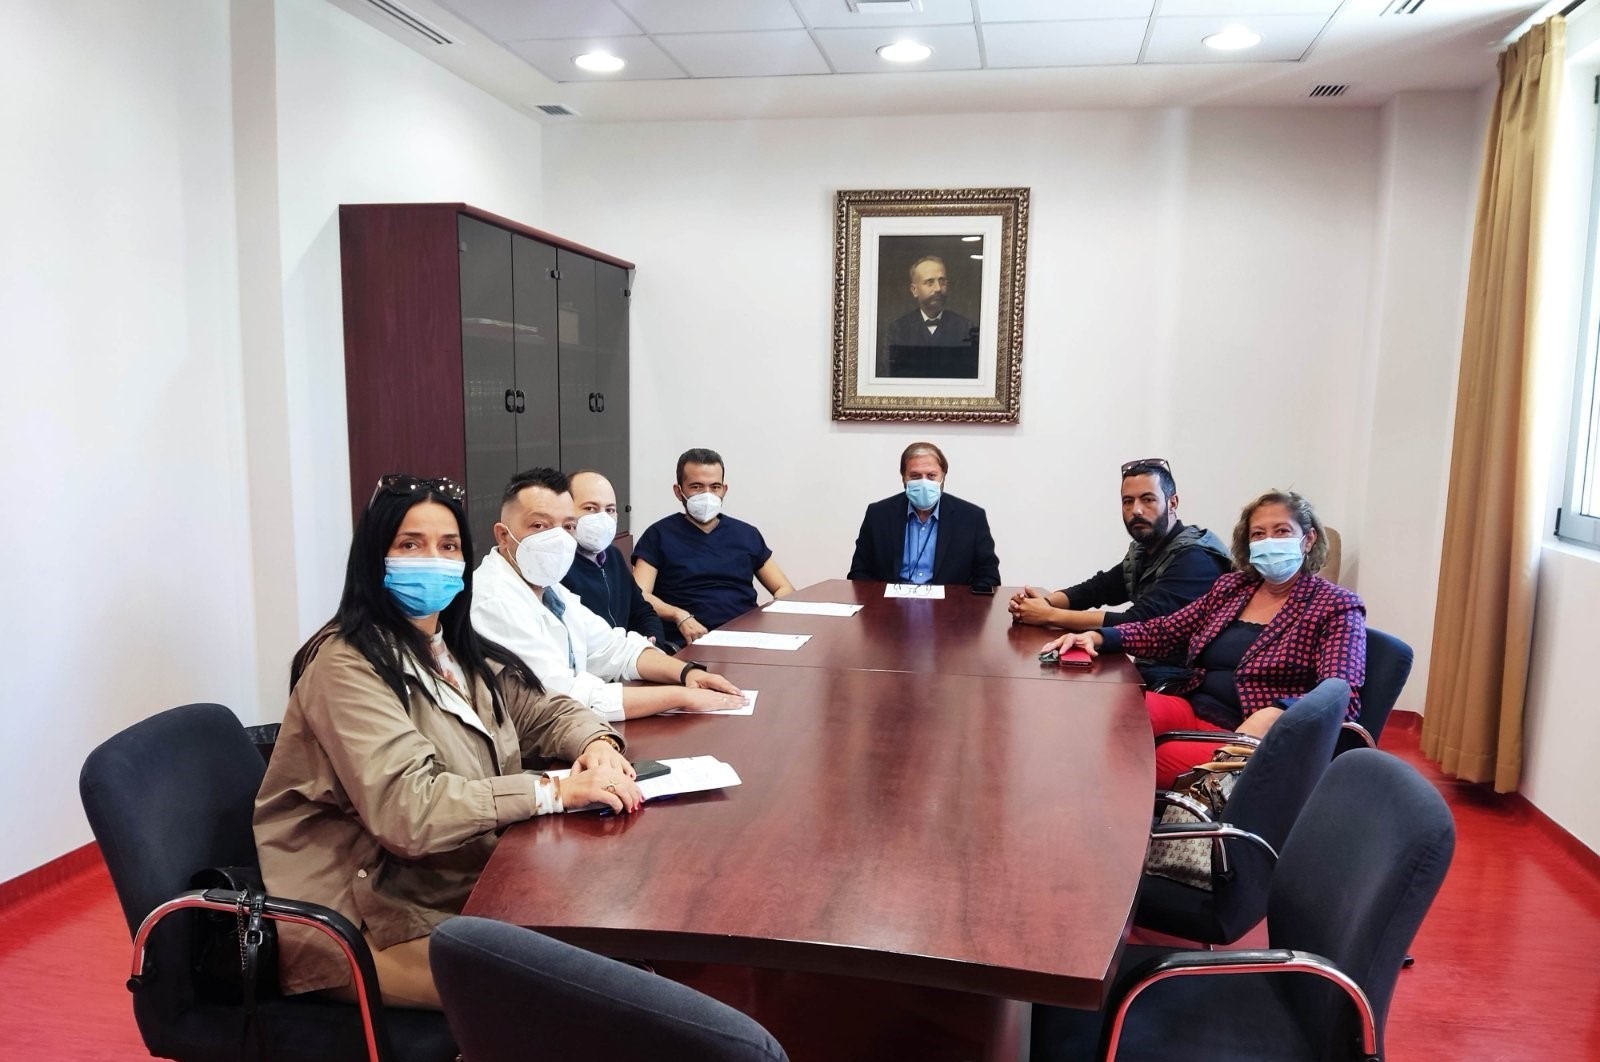 Συνάντηση του Νέου Διοικητικού Συμβουλίου με την Διοίκηση του Βενιζελείου Νοσοκομείου